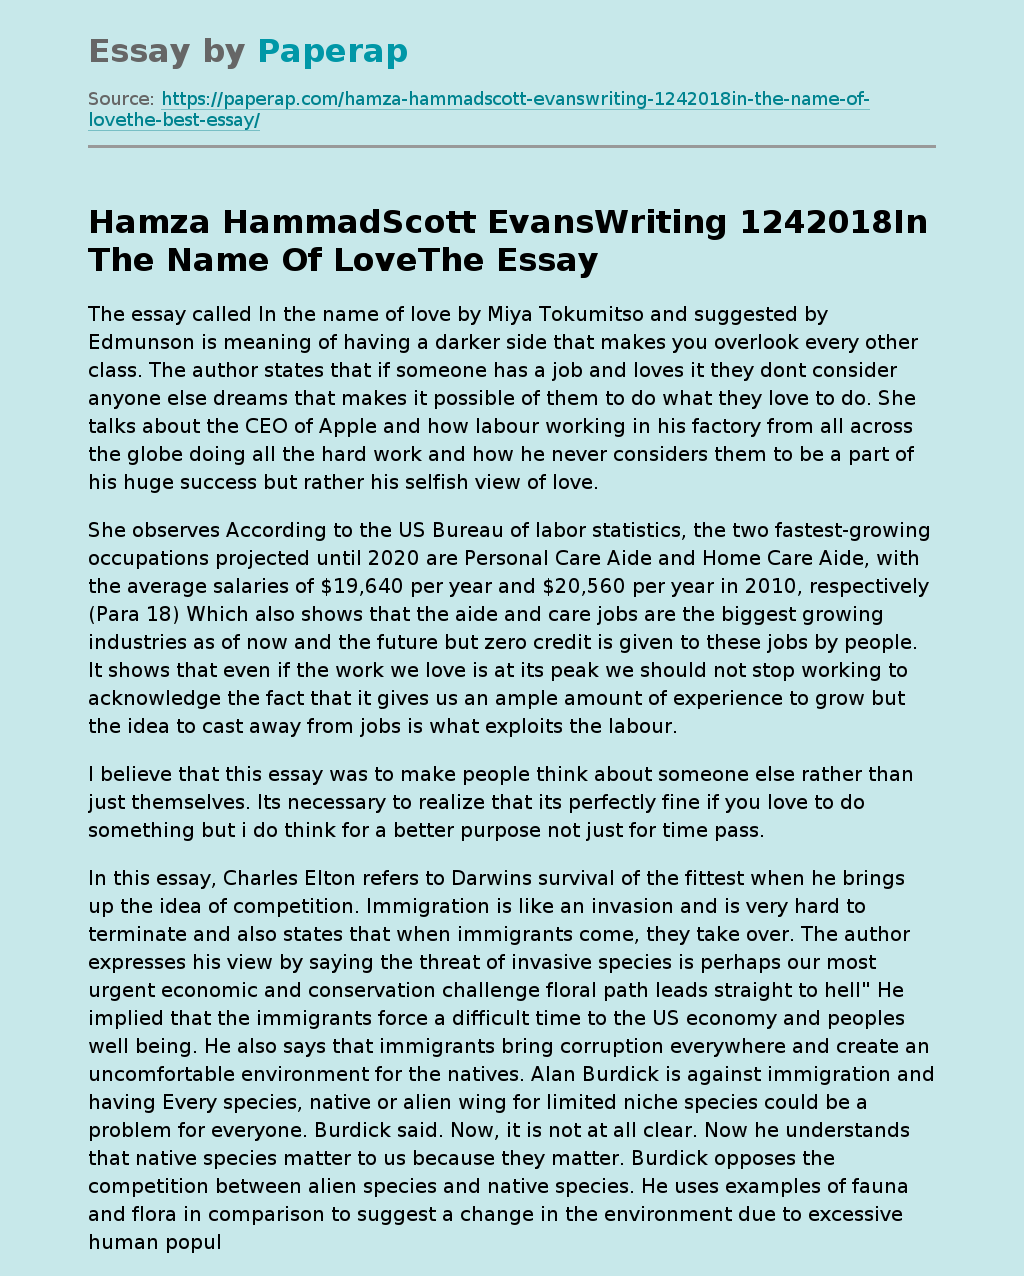 Hamza HammadScott EvansWriting 1242018In The Name Of LoveThe